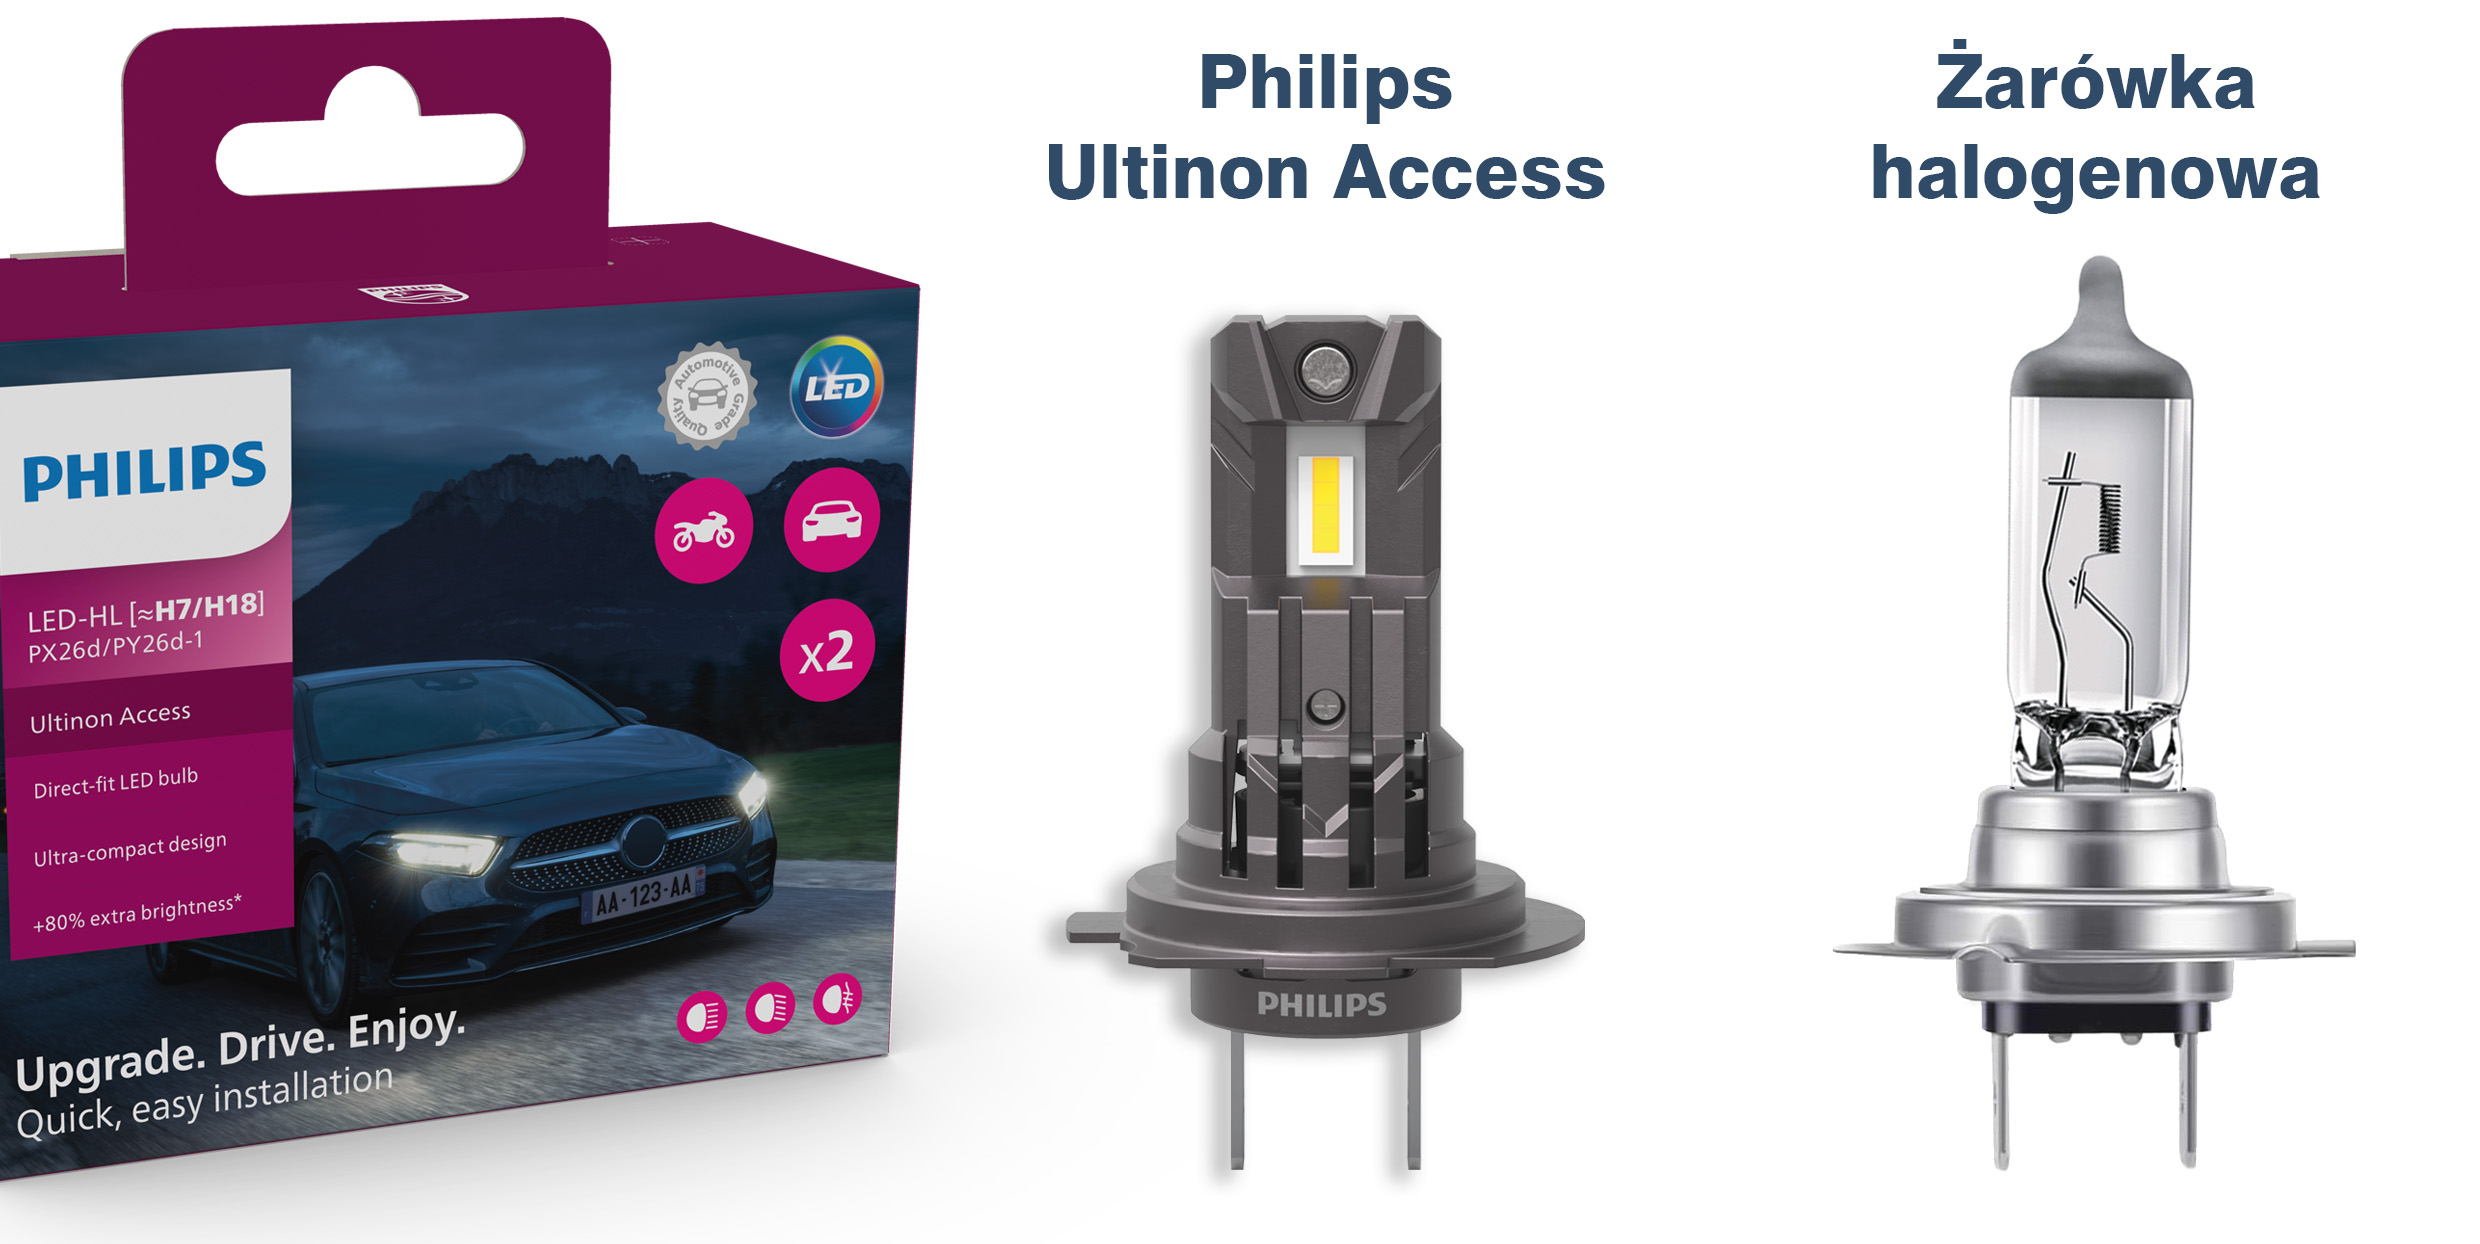 Philips zaprezentował retrofity Ultinon Access